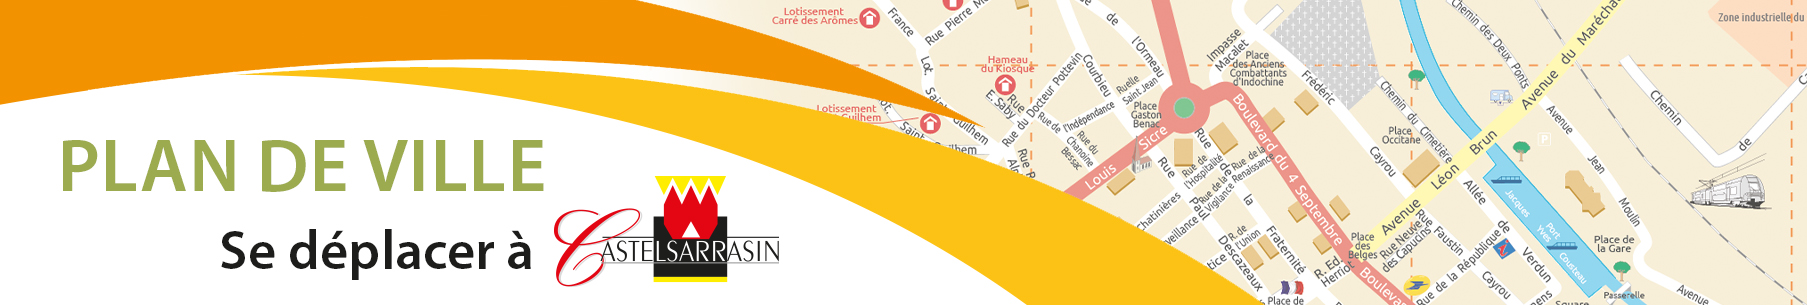 Plan de ville : se déplacer à Castelsarrasin